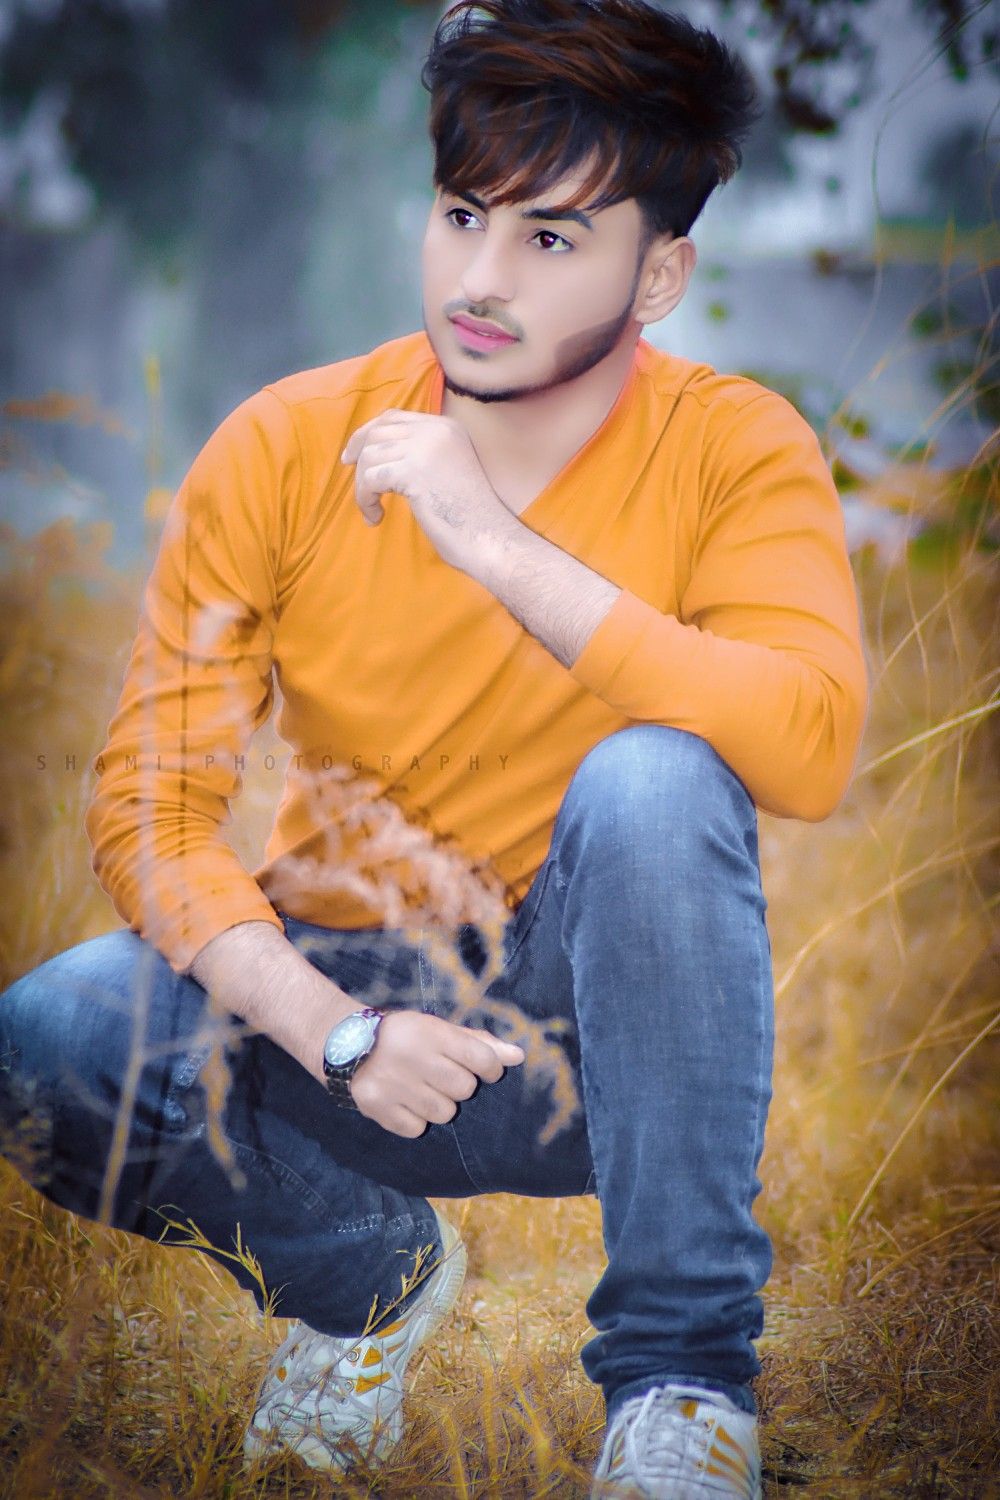 Stylish boys Whatsapp DP Profile Image Wallpaper Pics Photo. Pakistani Stylish Instagram Boy